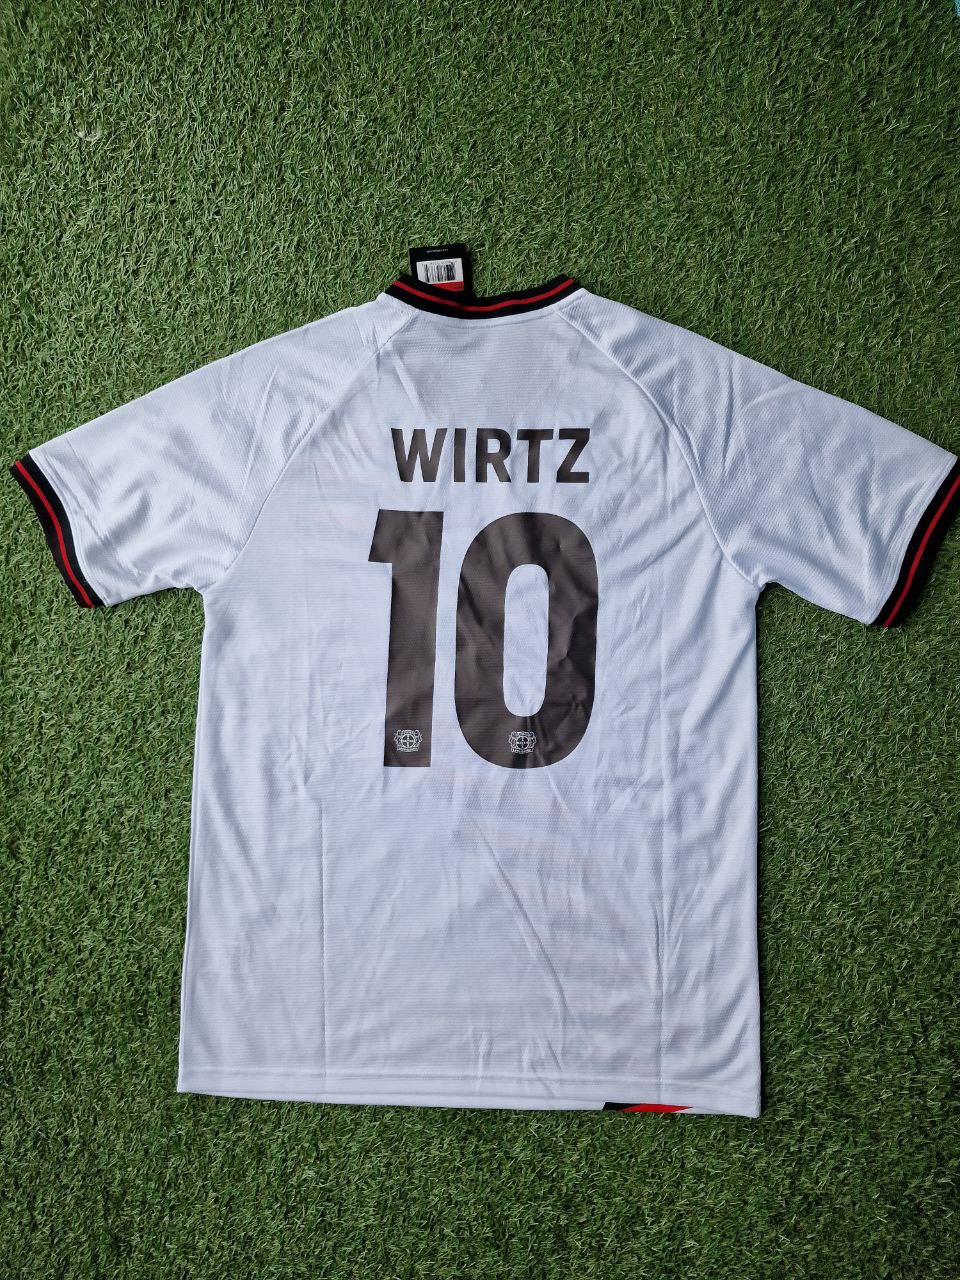 Florian Wirtz Bayer Leverkusen Football Jersey